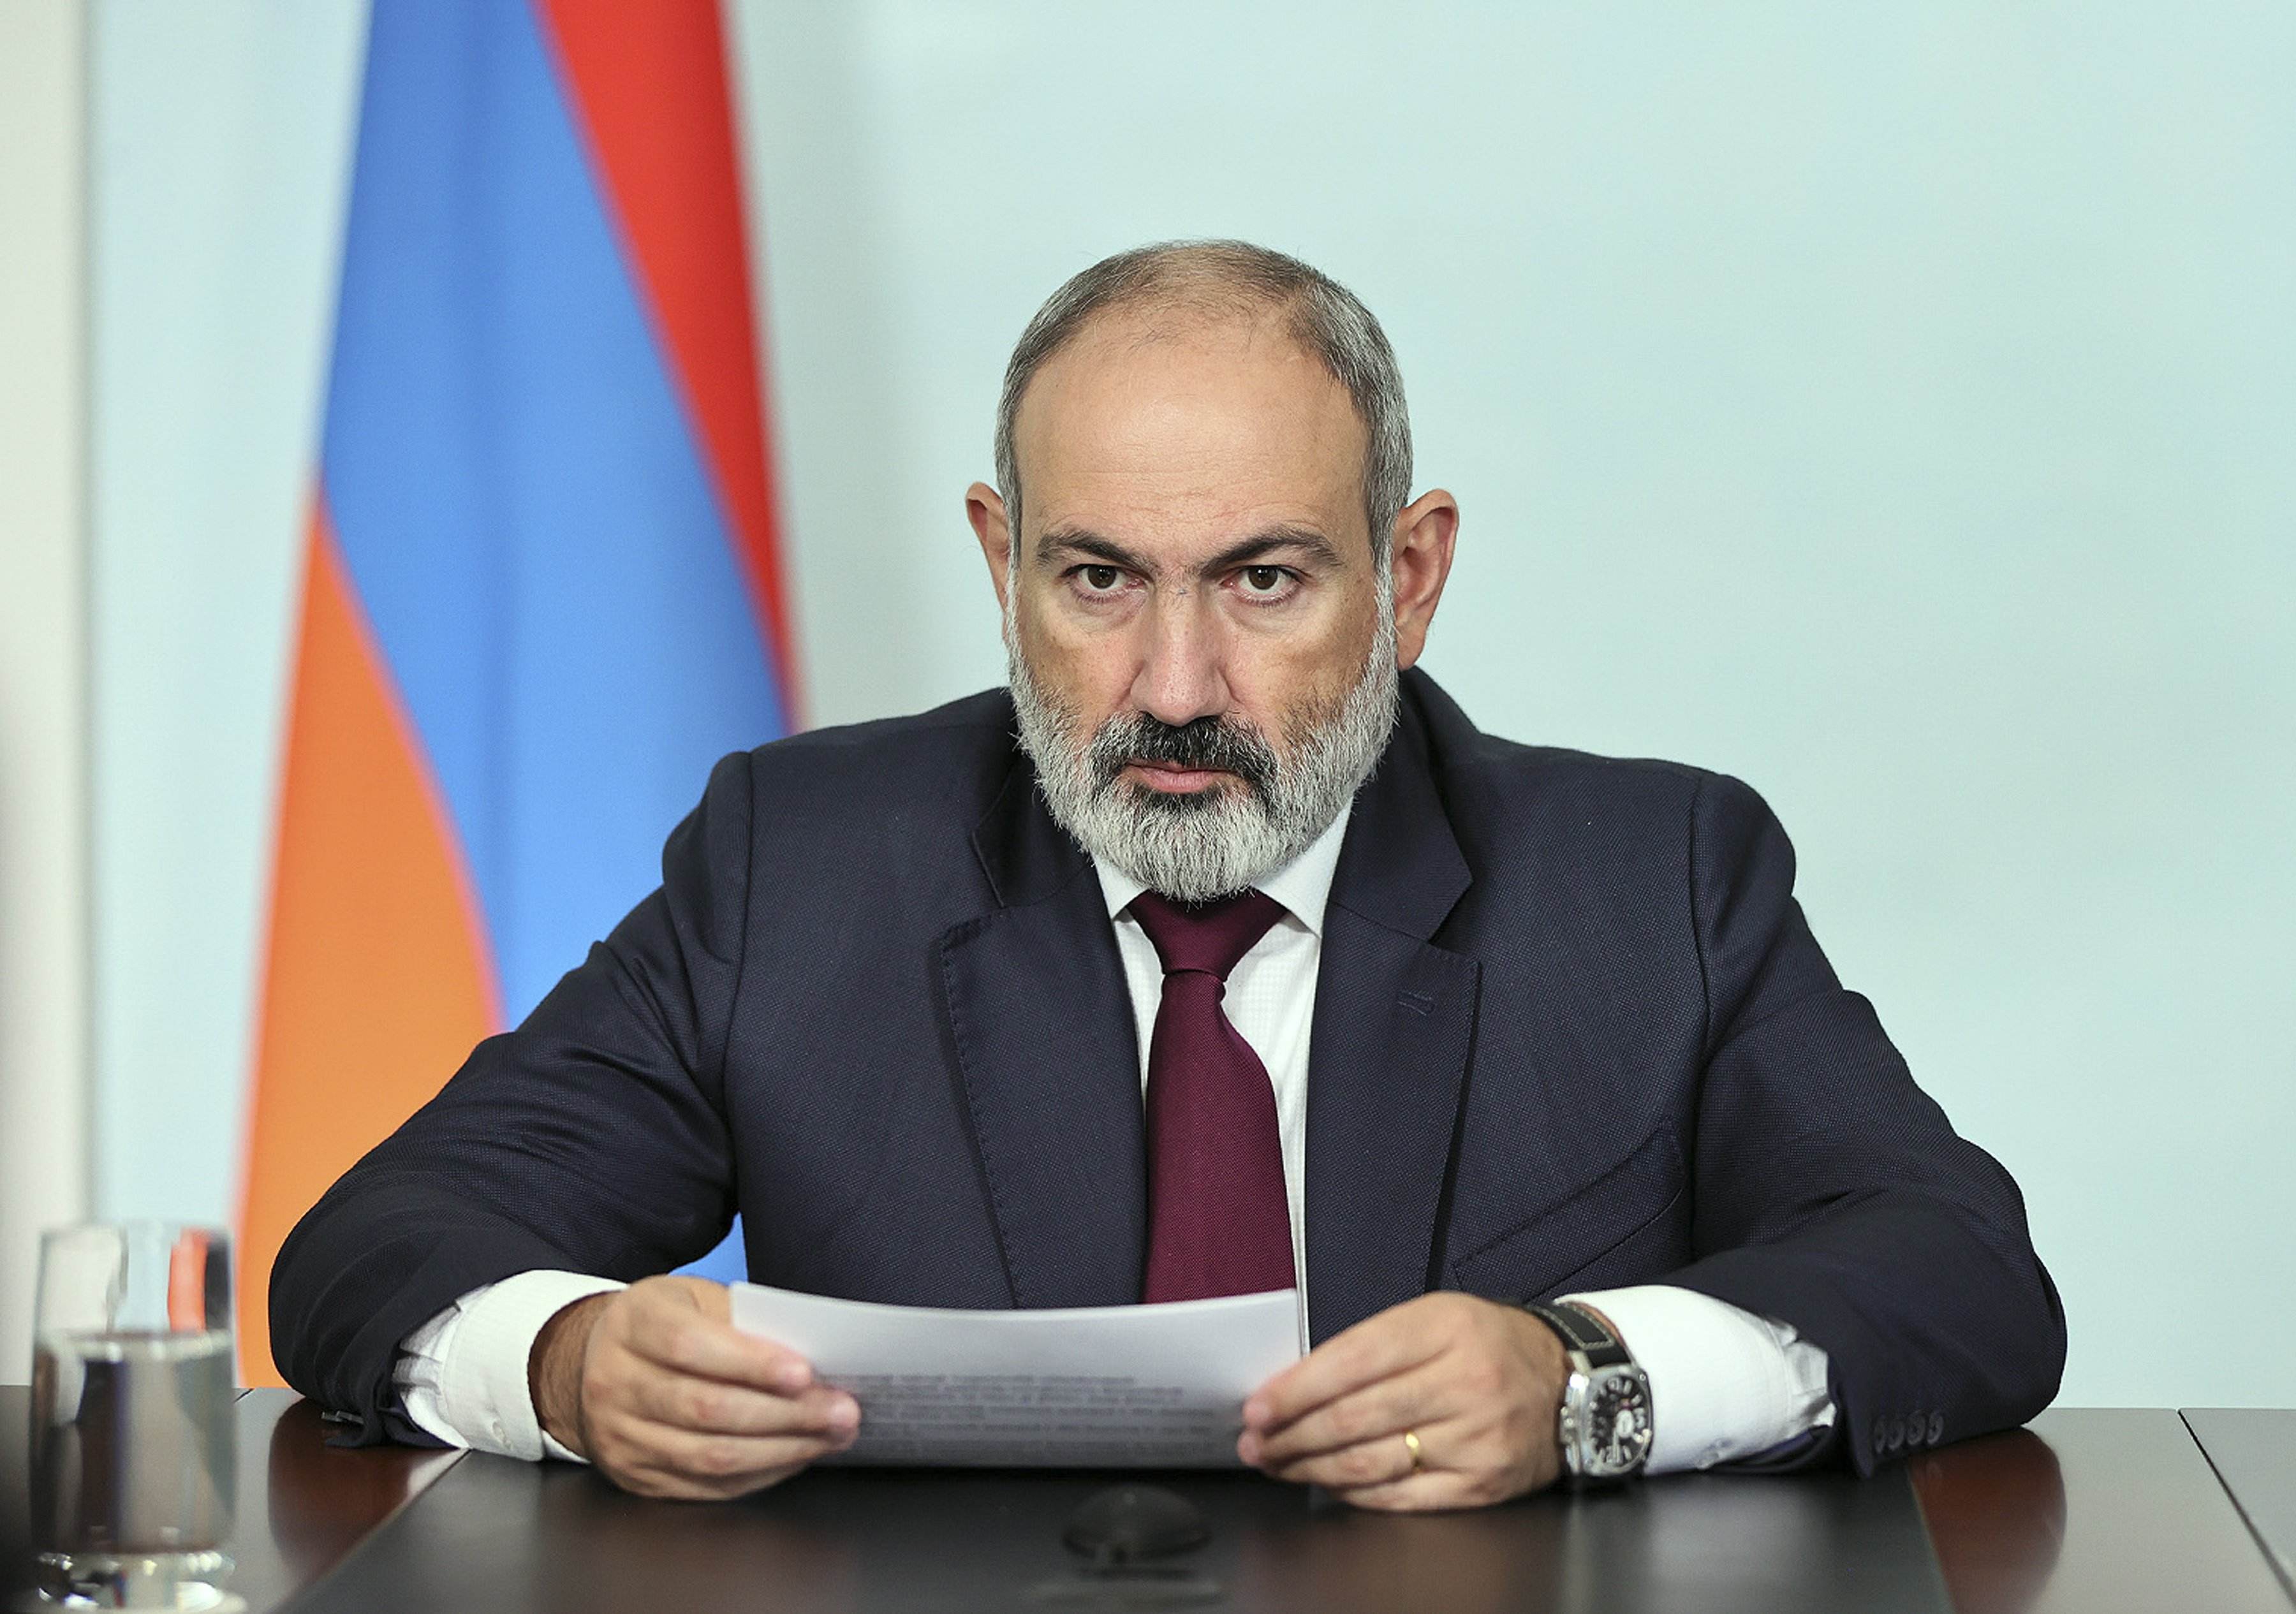 El conflicte de l'Alt Karabakh tensa al límit les relacions entre Armènia i Rússia